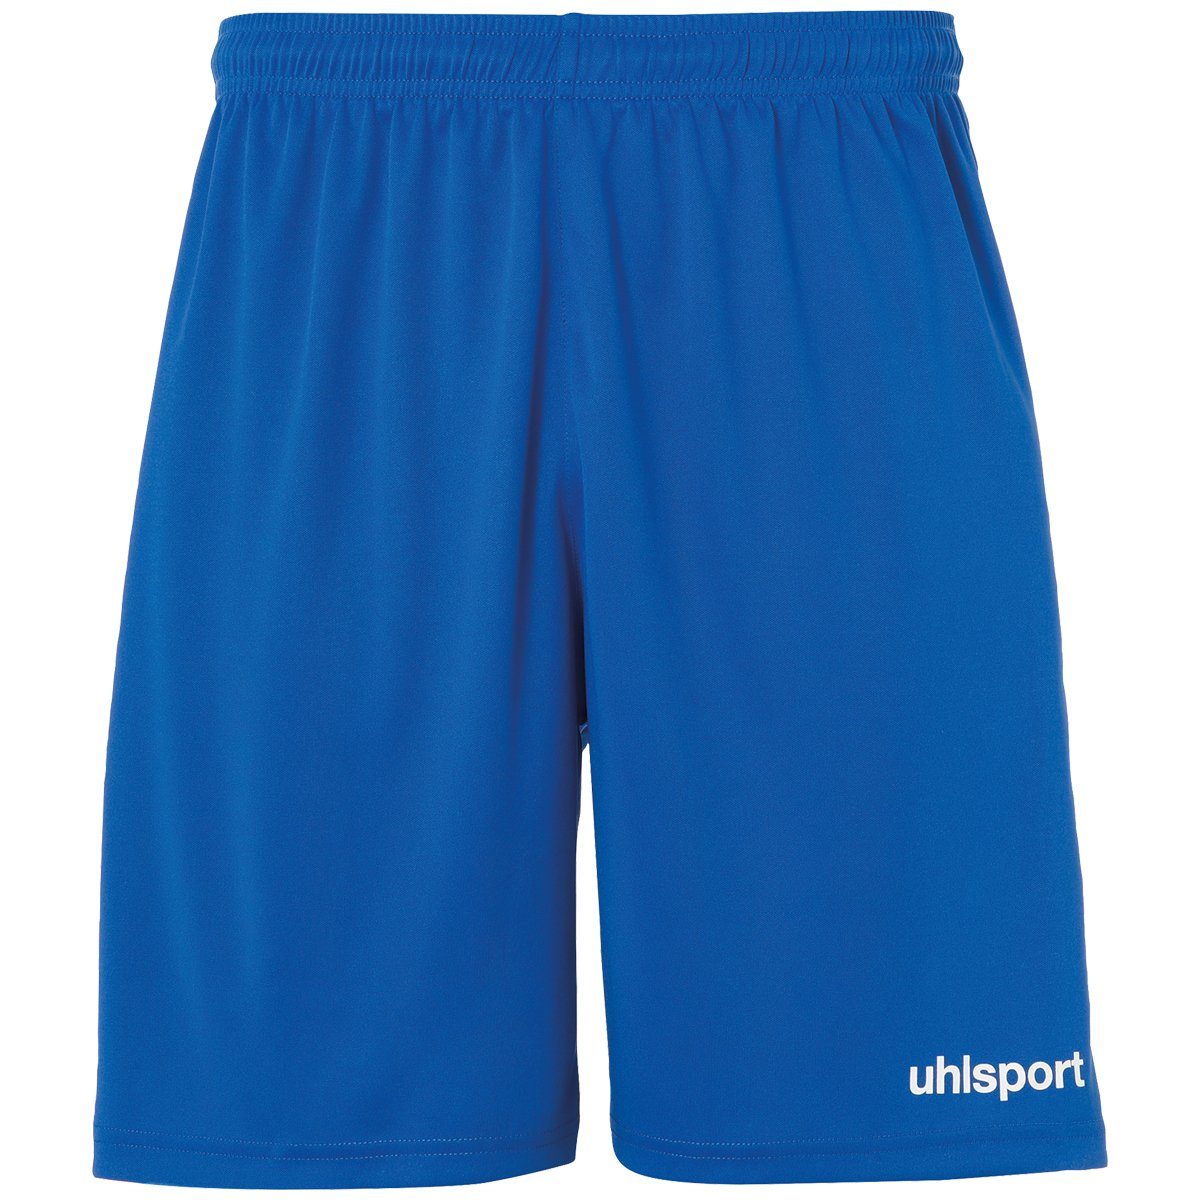 uhlsport Shorts uhlsport Shorts